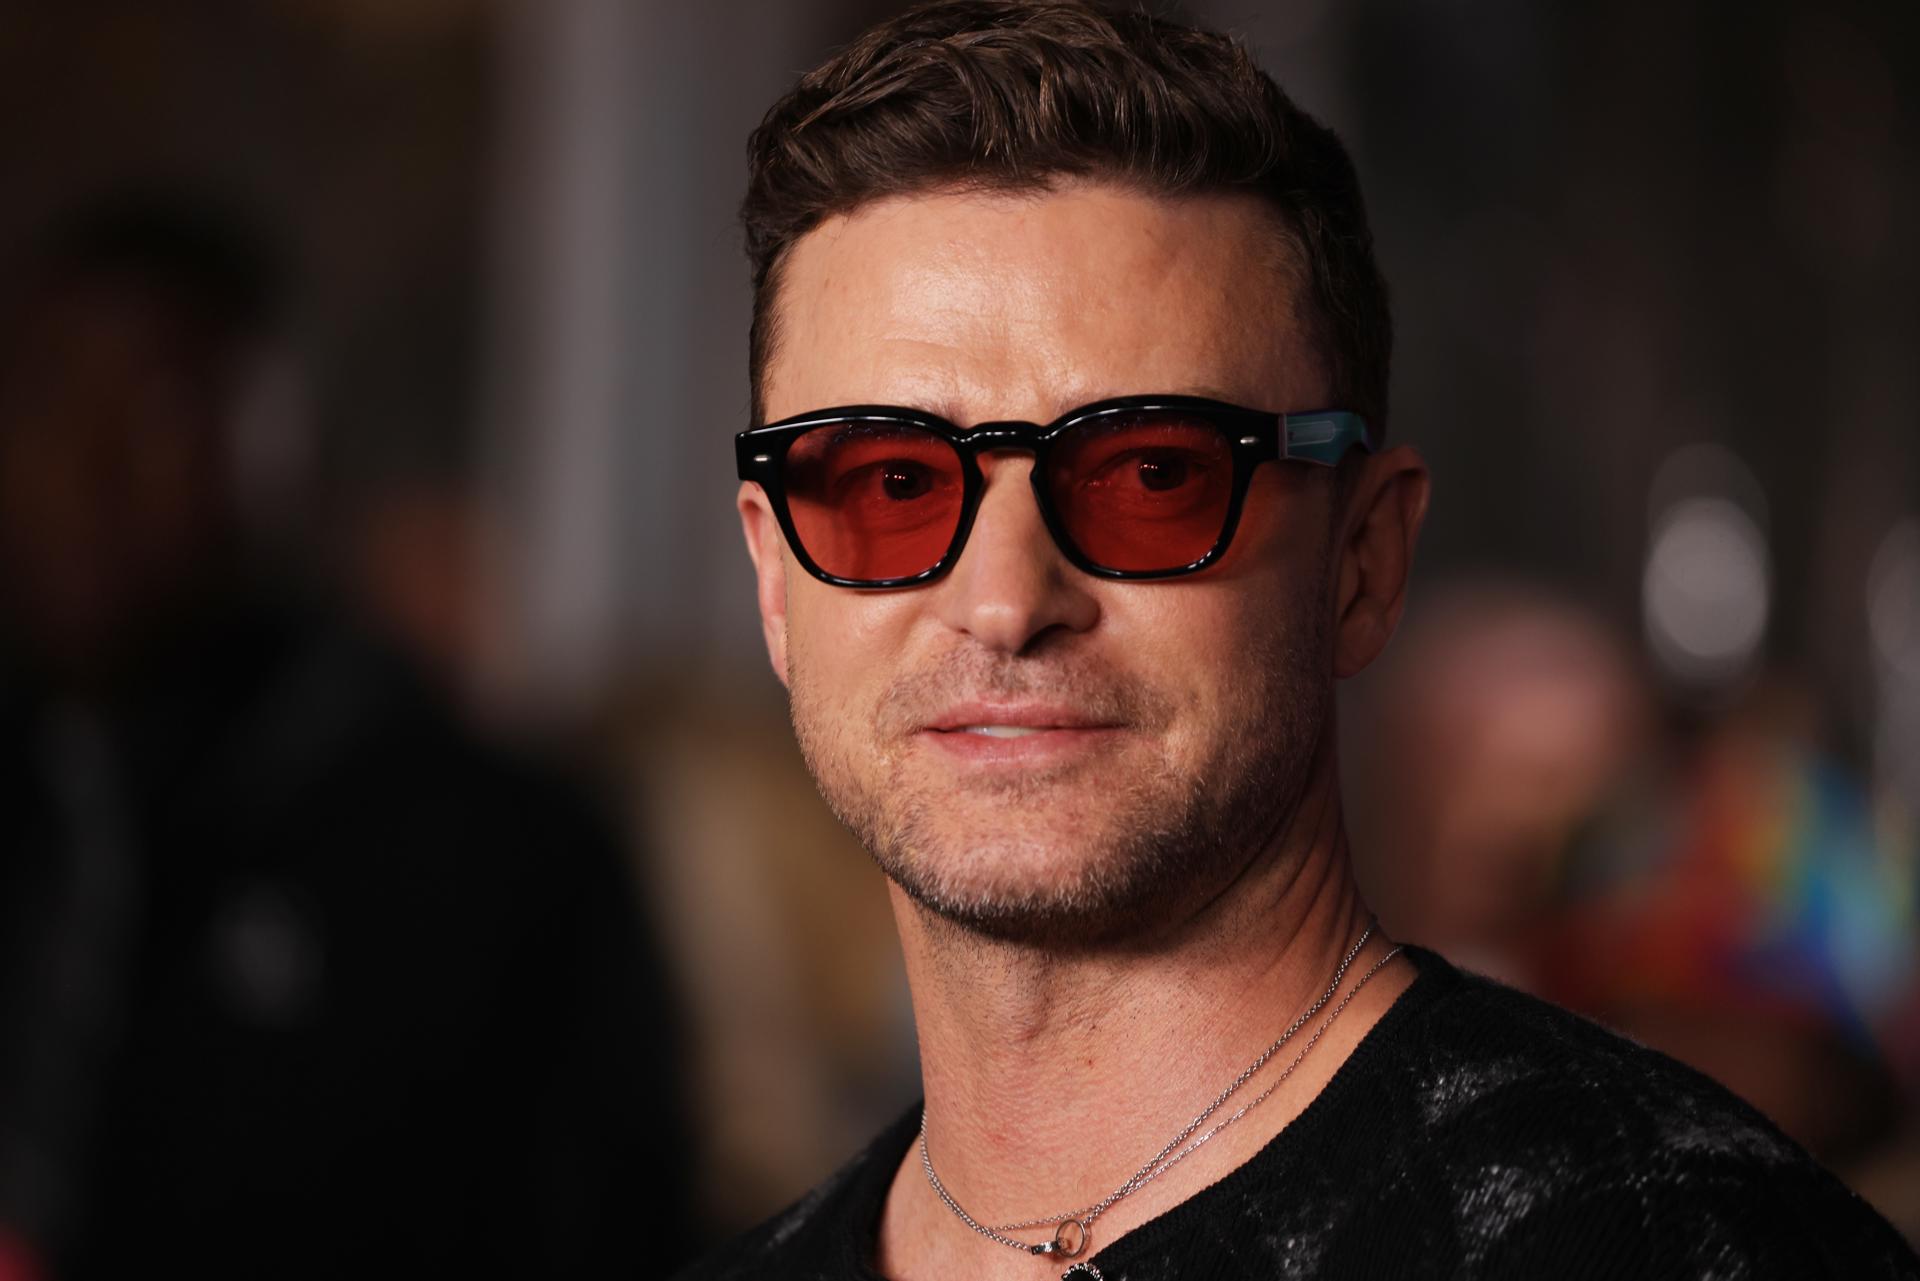 El cantante y actor estadounidense Justin Timberlake, en una fotografía de archivo. EFE/David Swanson